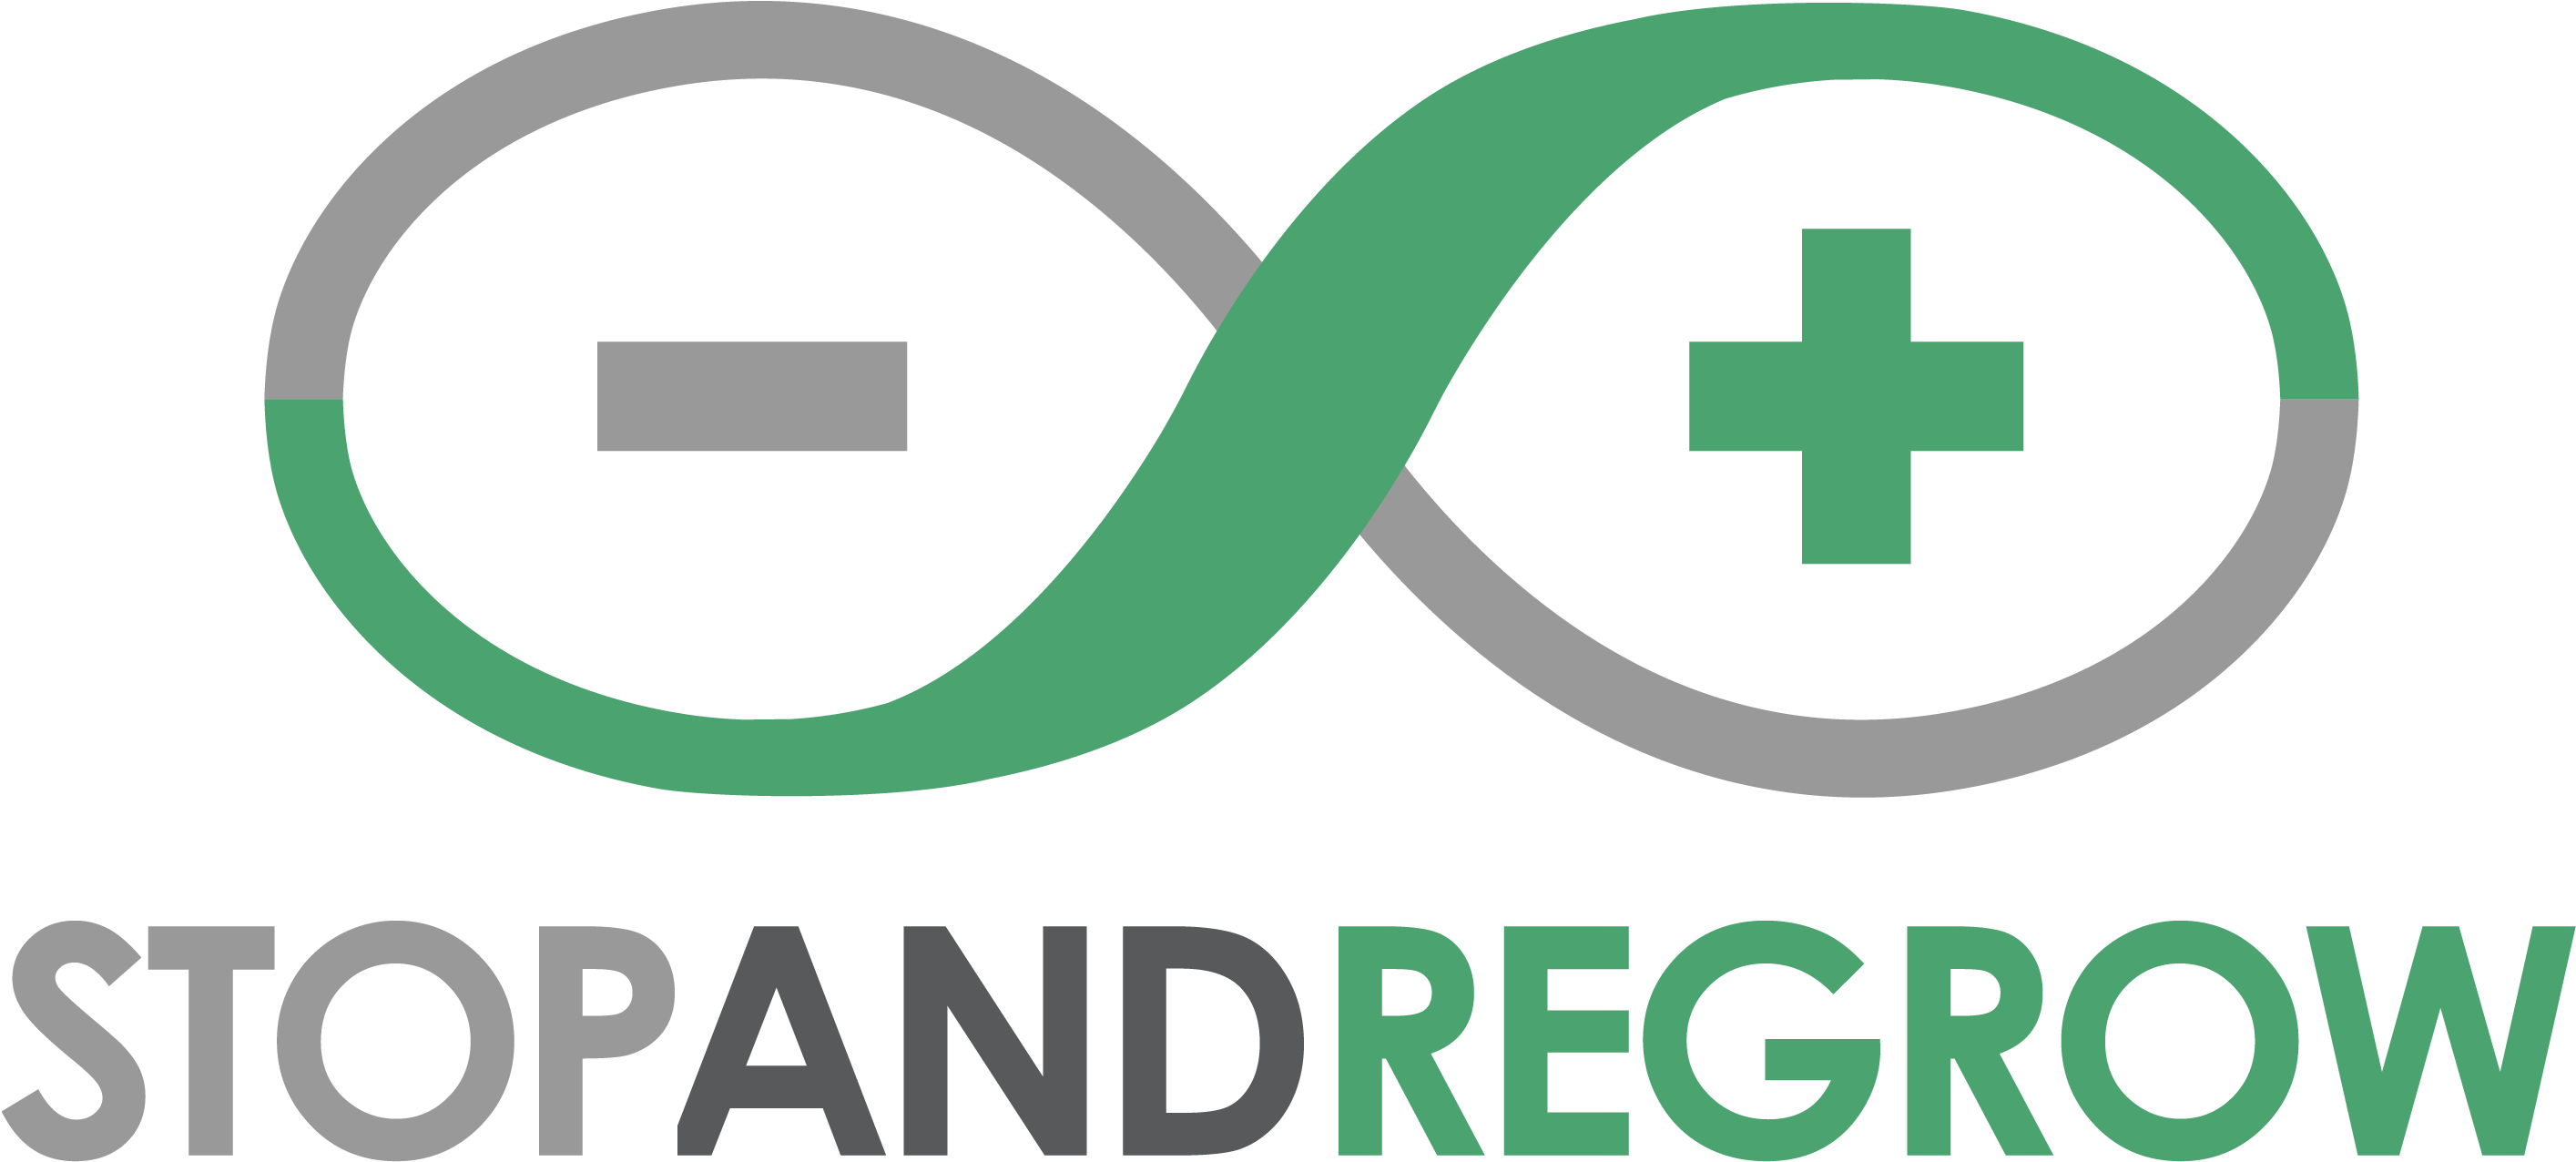 Quest Diagnostics - Arduino Ide Logo (2929x1275), Png Download